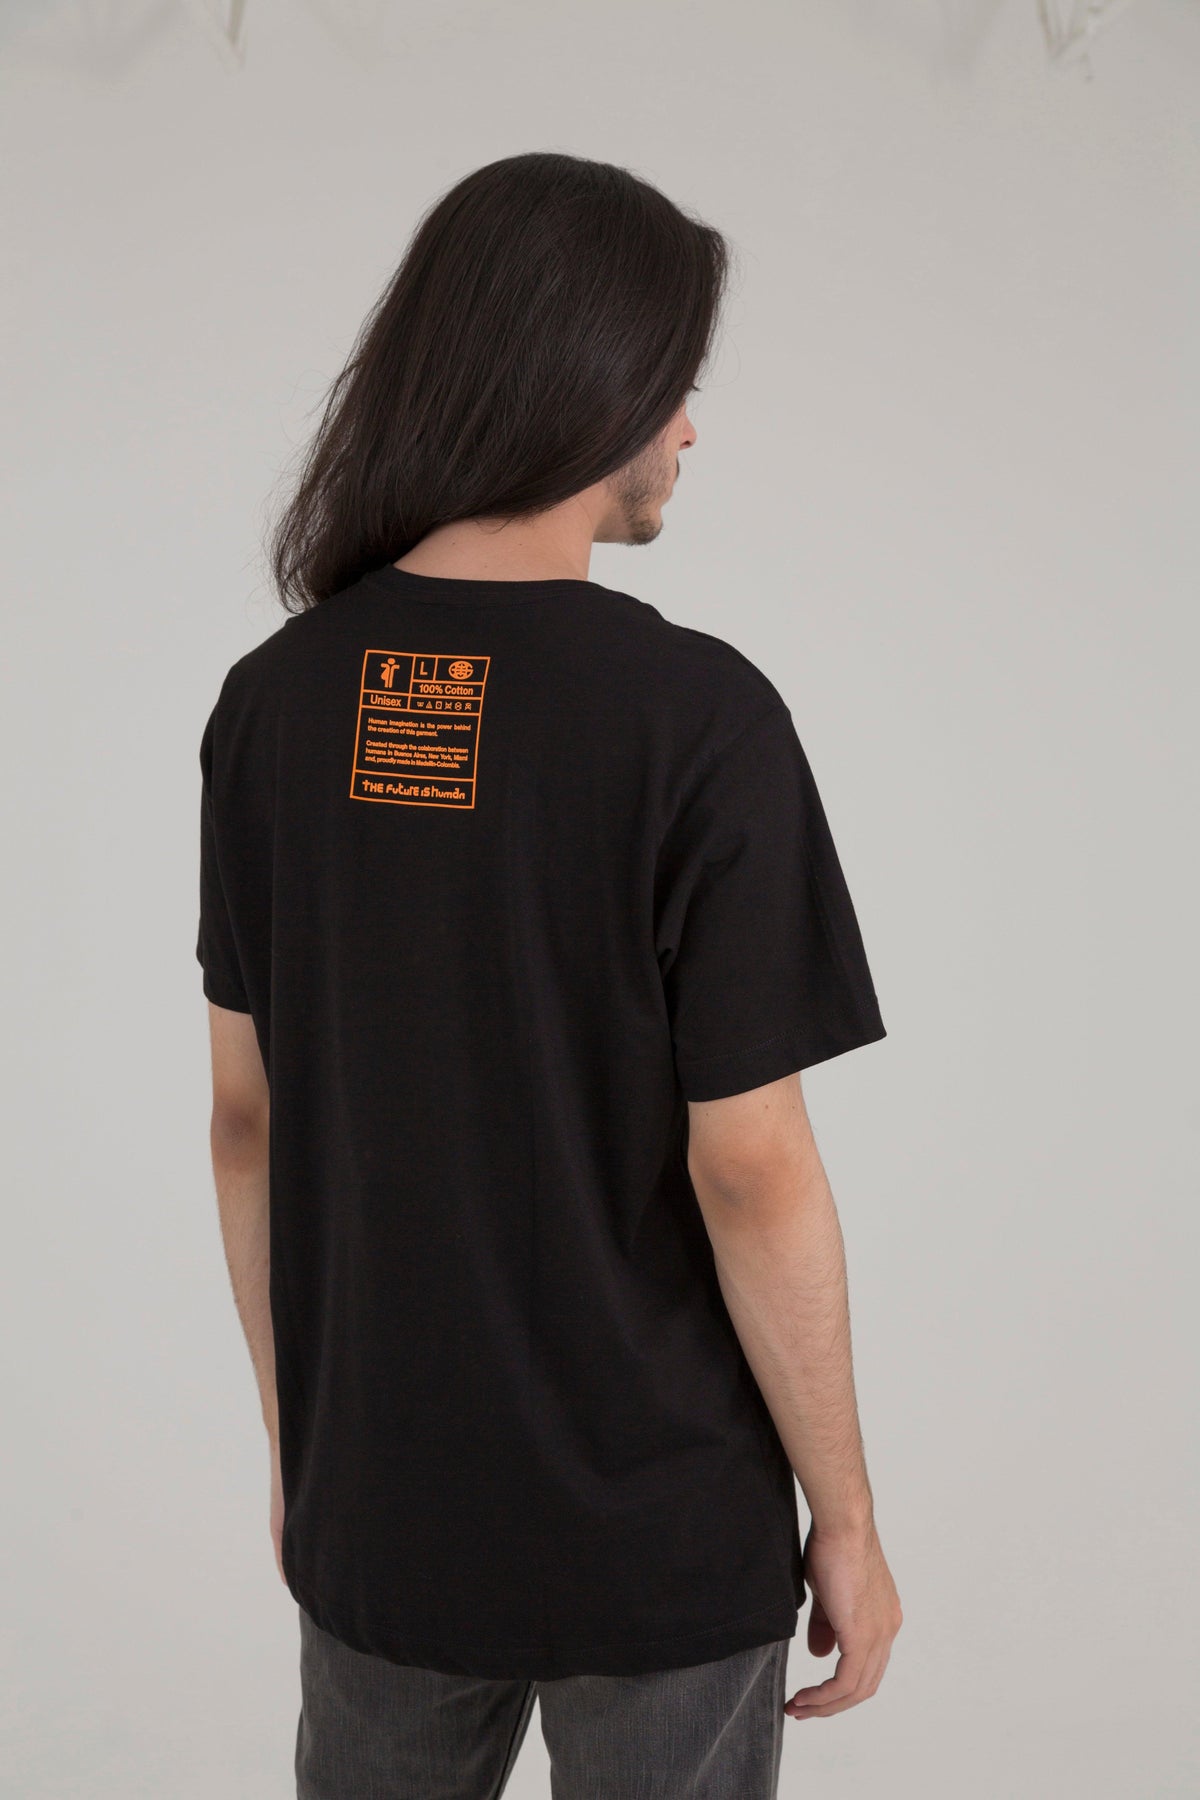 Posicionar Grado Celsius Tomar conciencia Camiseta Negra de Cuello Redondo - The Future Is Human